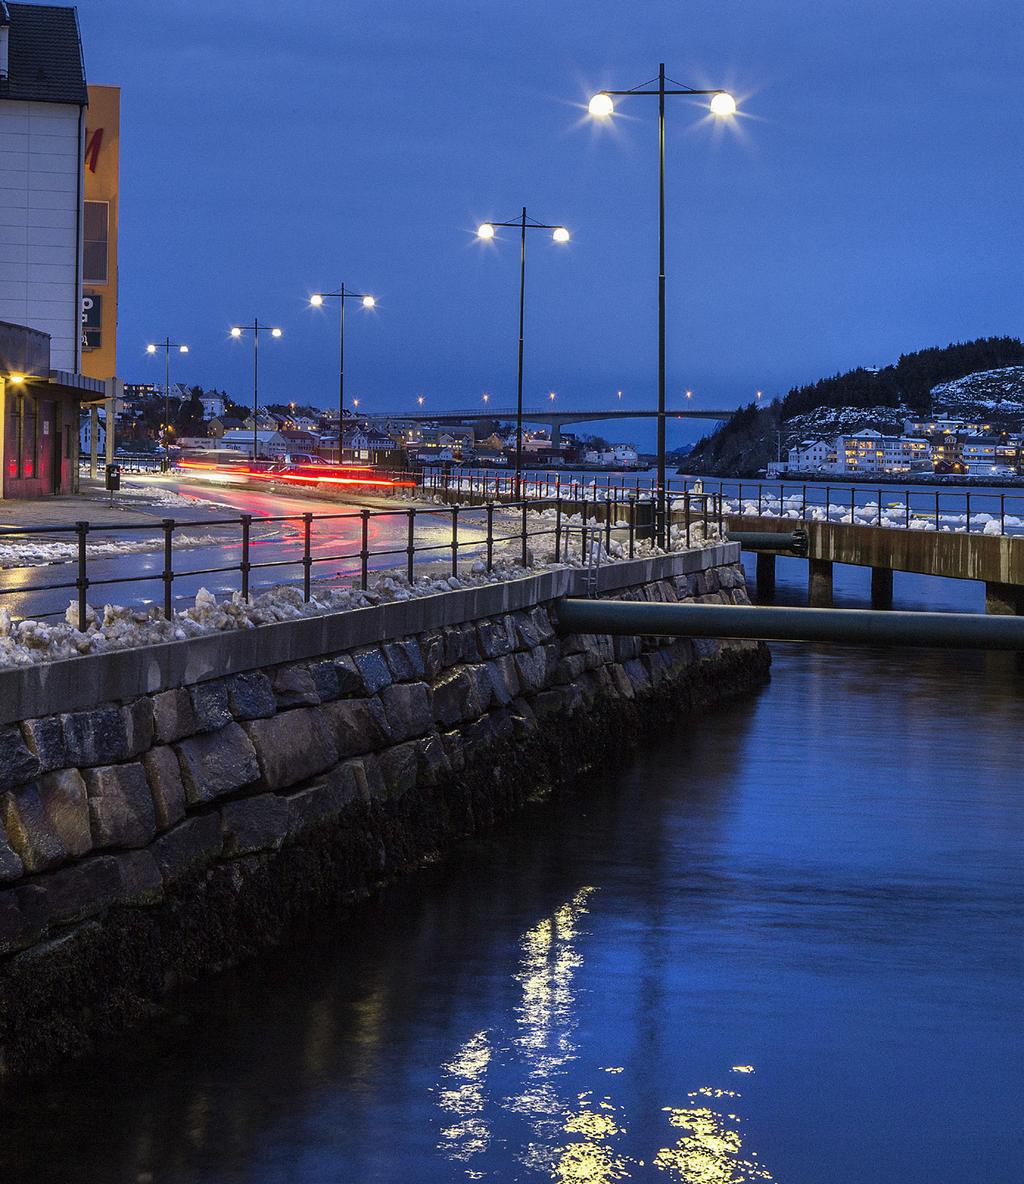 Rakennuttaja: Kristiansundin kunta Sijainti: Møre ja Romsdal Asennetut valaisimet: Copenhagen LED ja Iridium3 LED Norjalainen energiayhtiö, josta myöhemmin tuli osakeyhtiö kunta